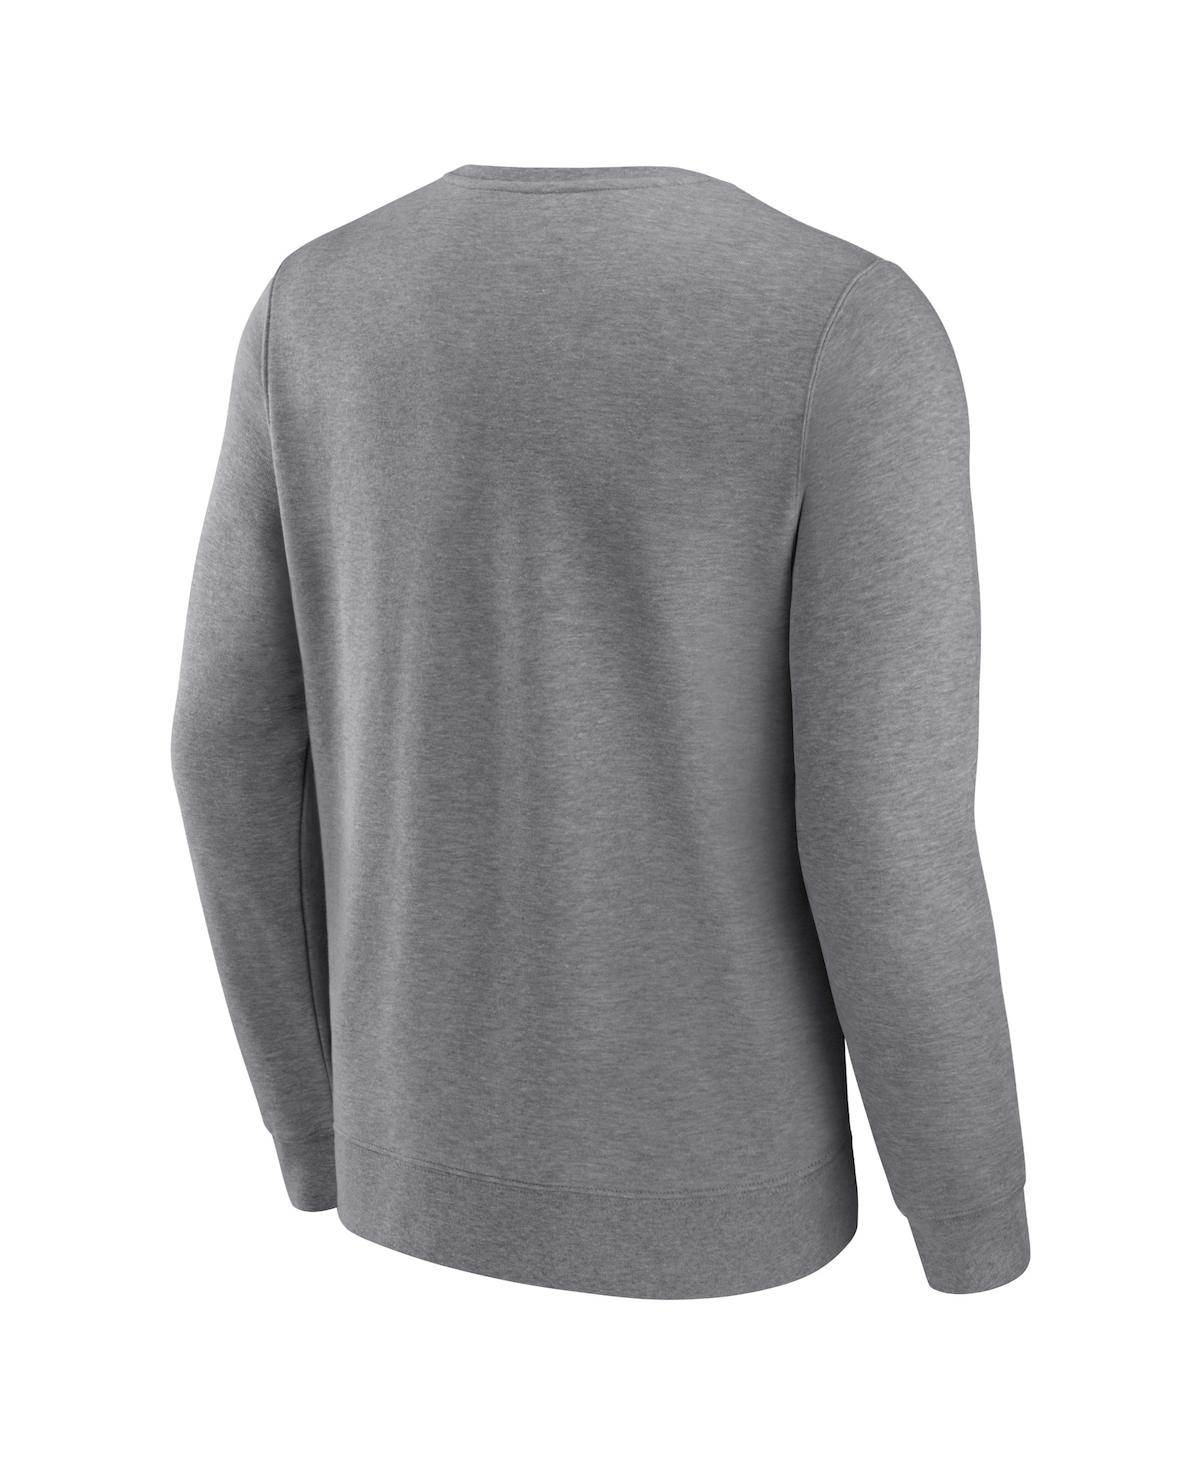 Shop Fanatics Men's  Heather Gray Los Angeles Dodgers Simplicity Pullover Sweatshirt